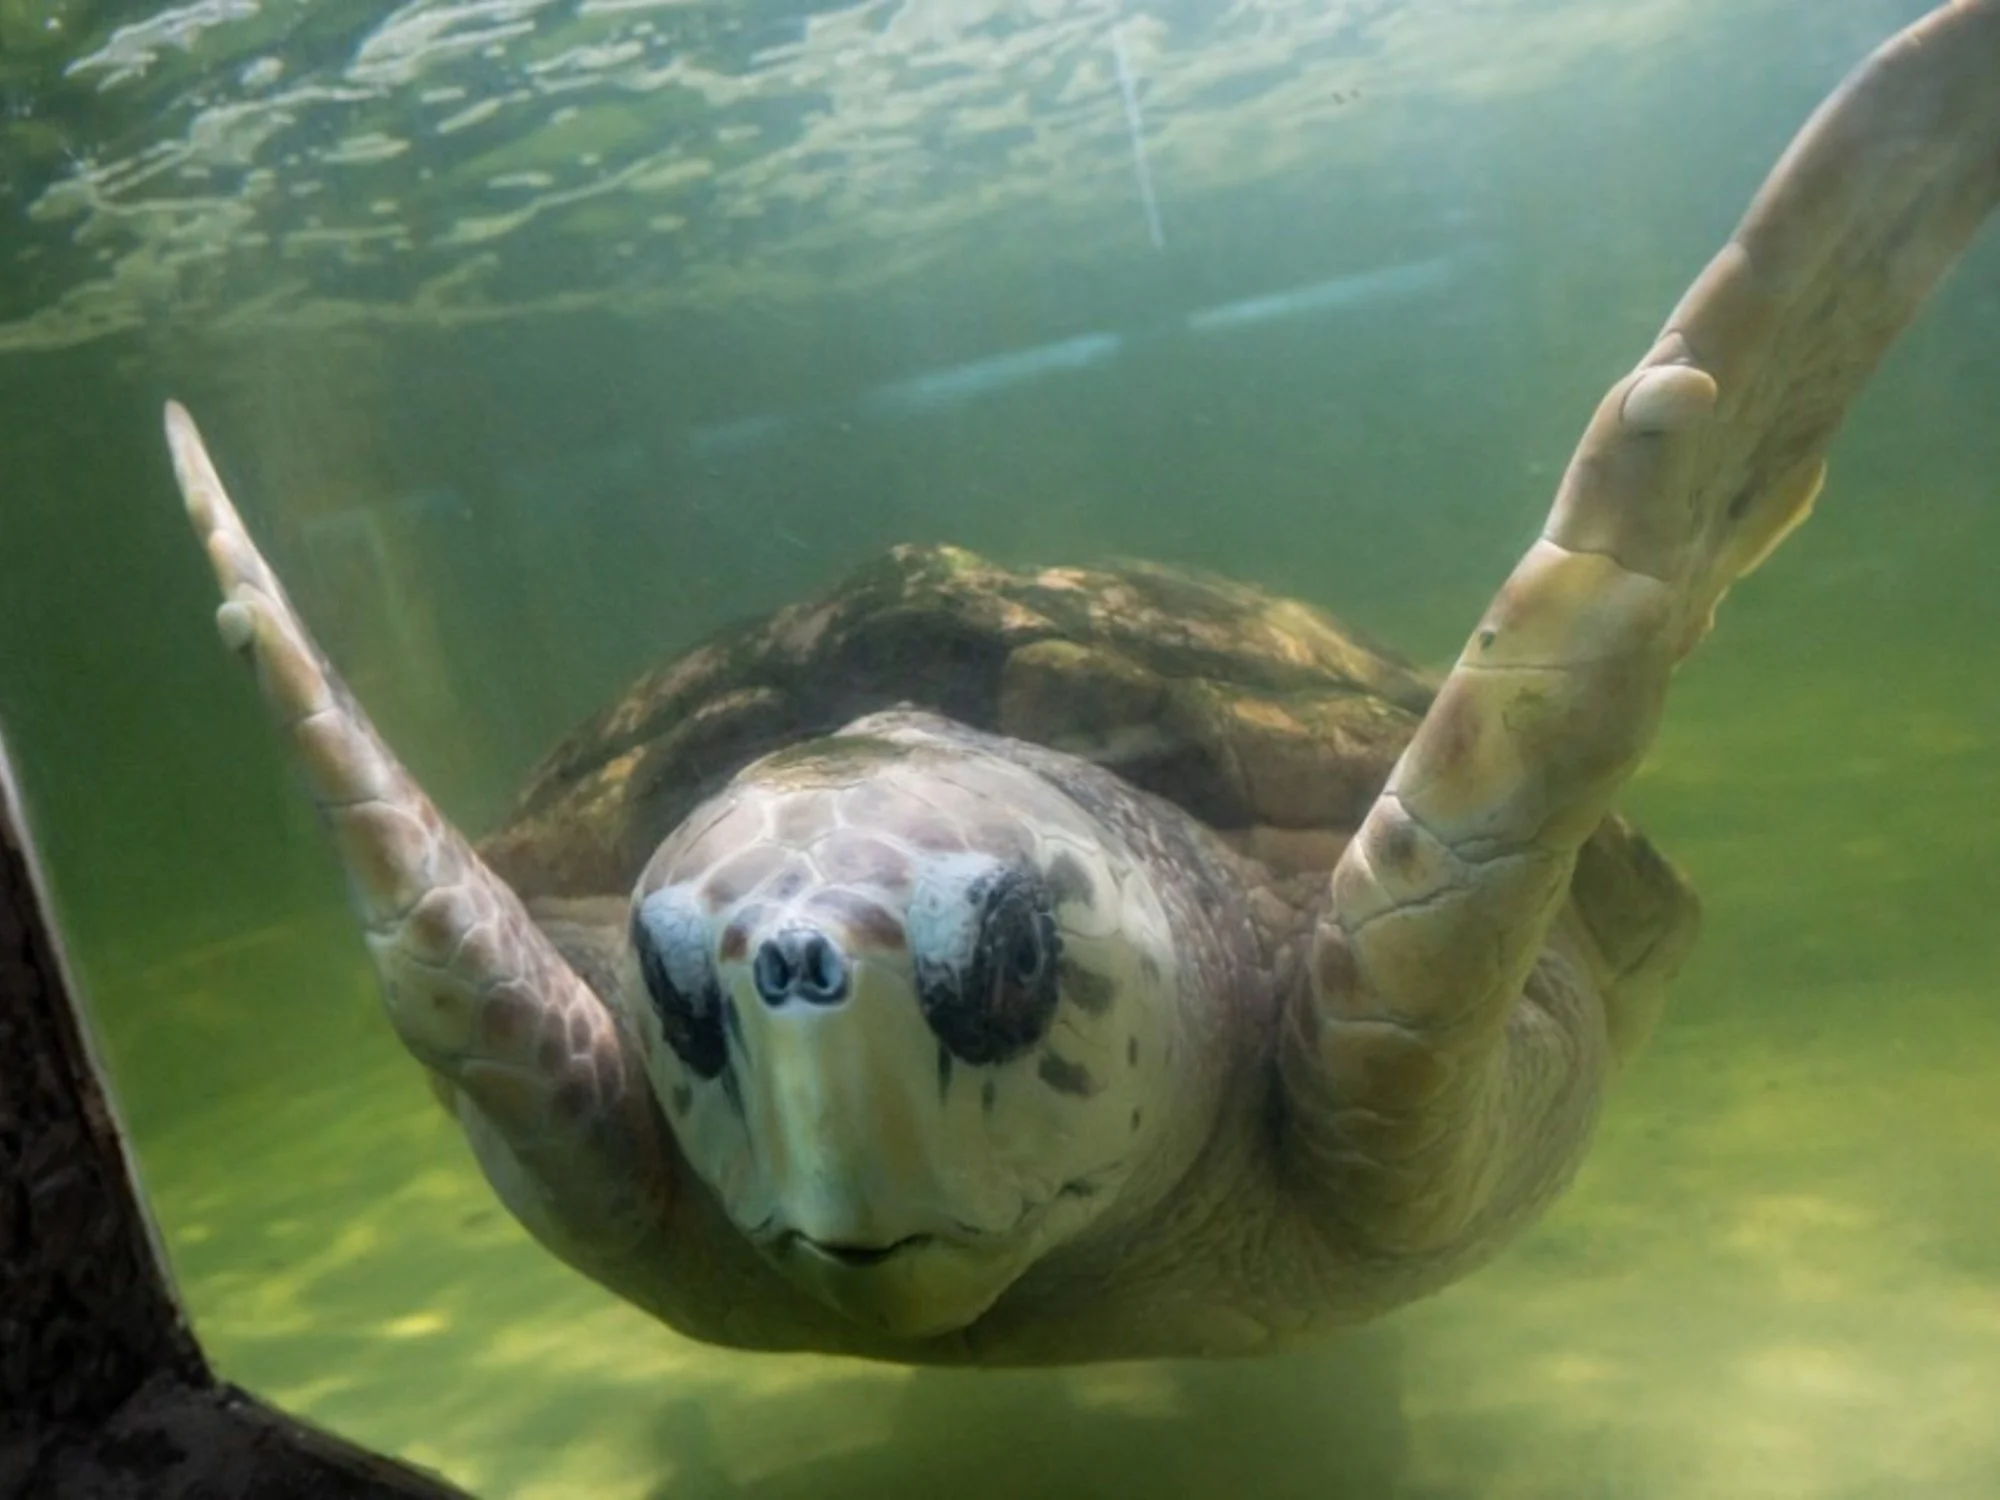 De Mendoza a Mar del Plata: trasladarán al tortugo Jorge tras 40 años en cautiverio